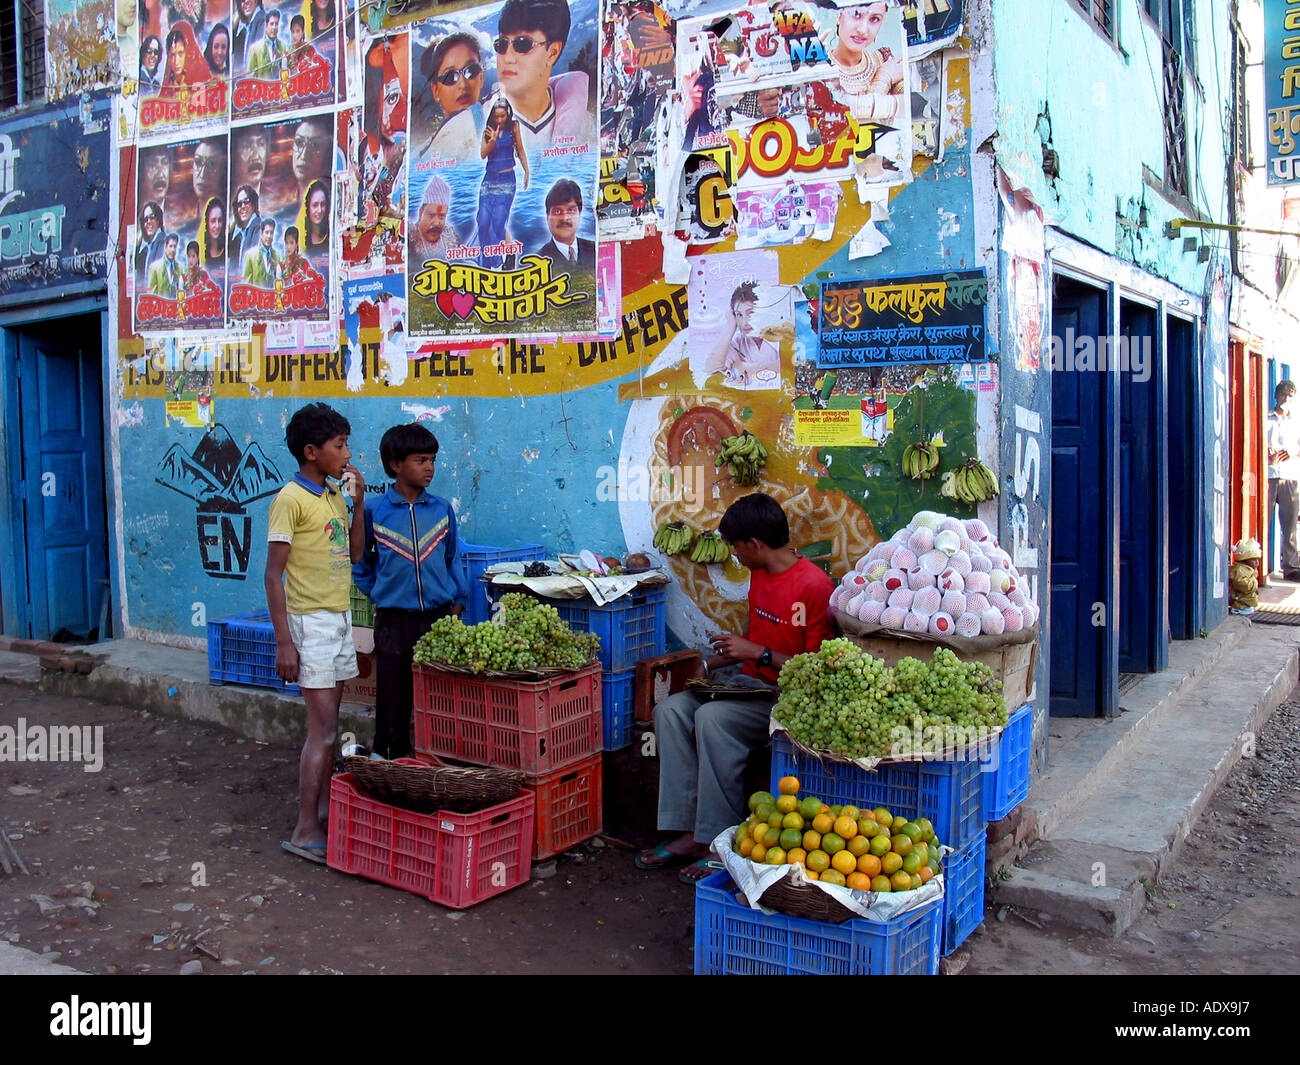 Vende le verdure su strada del mercato sulle pareti sono appesi poster di Bollywood indiana attori e film Foto Stock